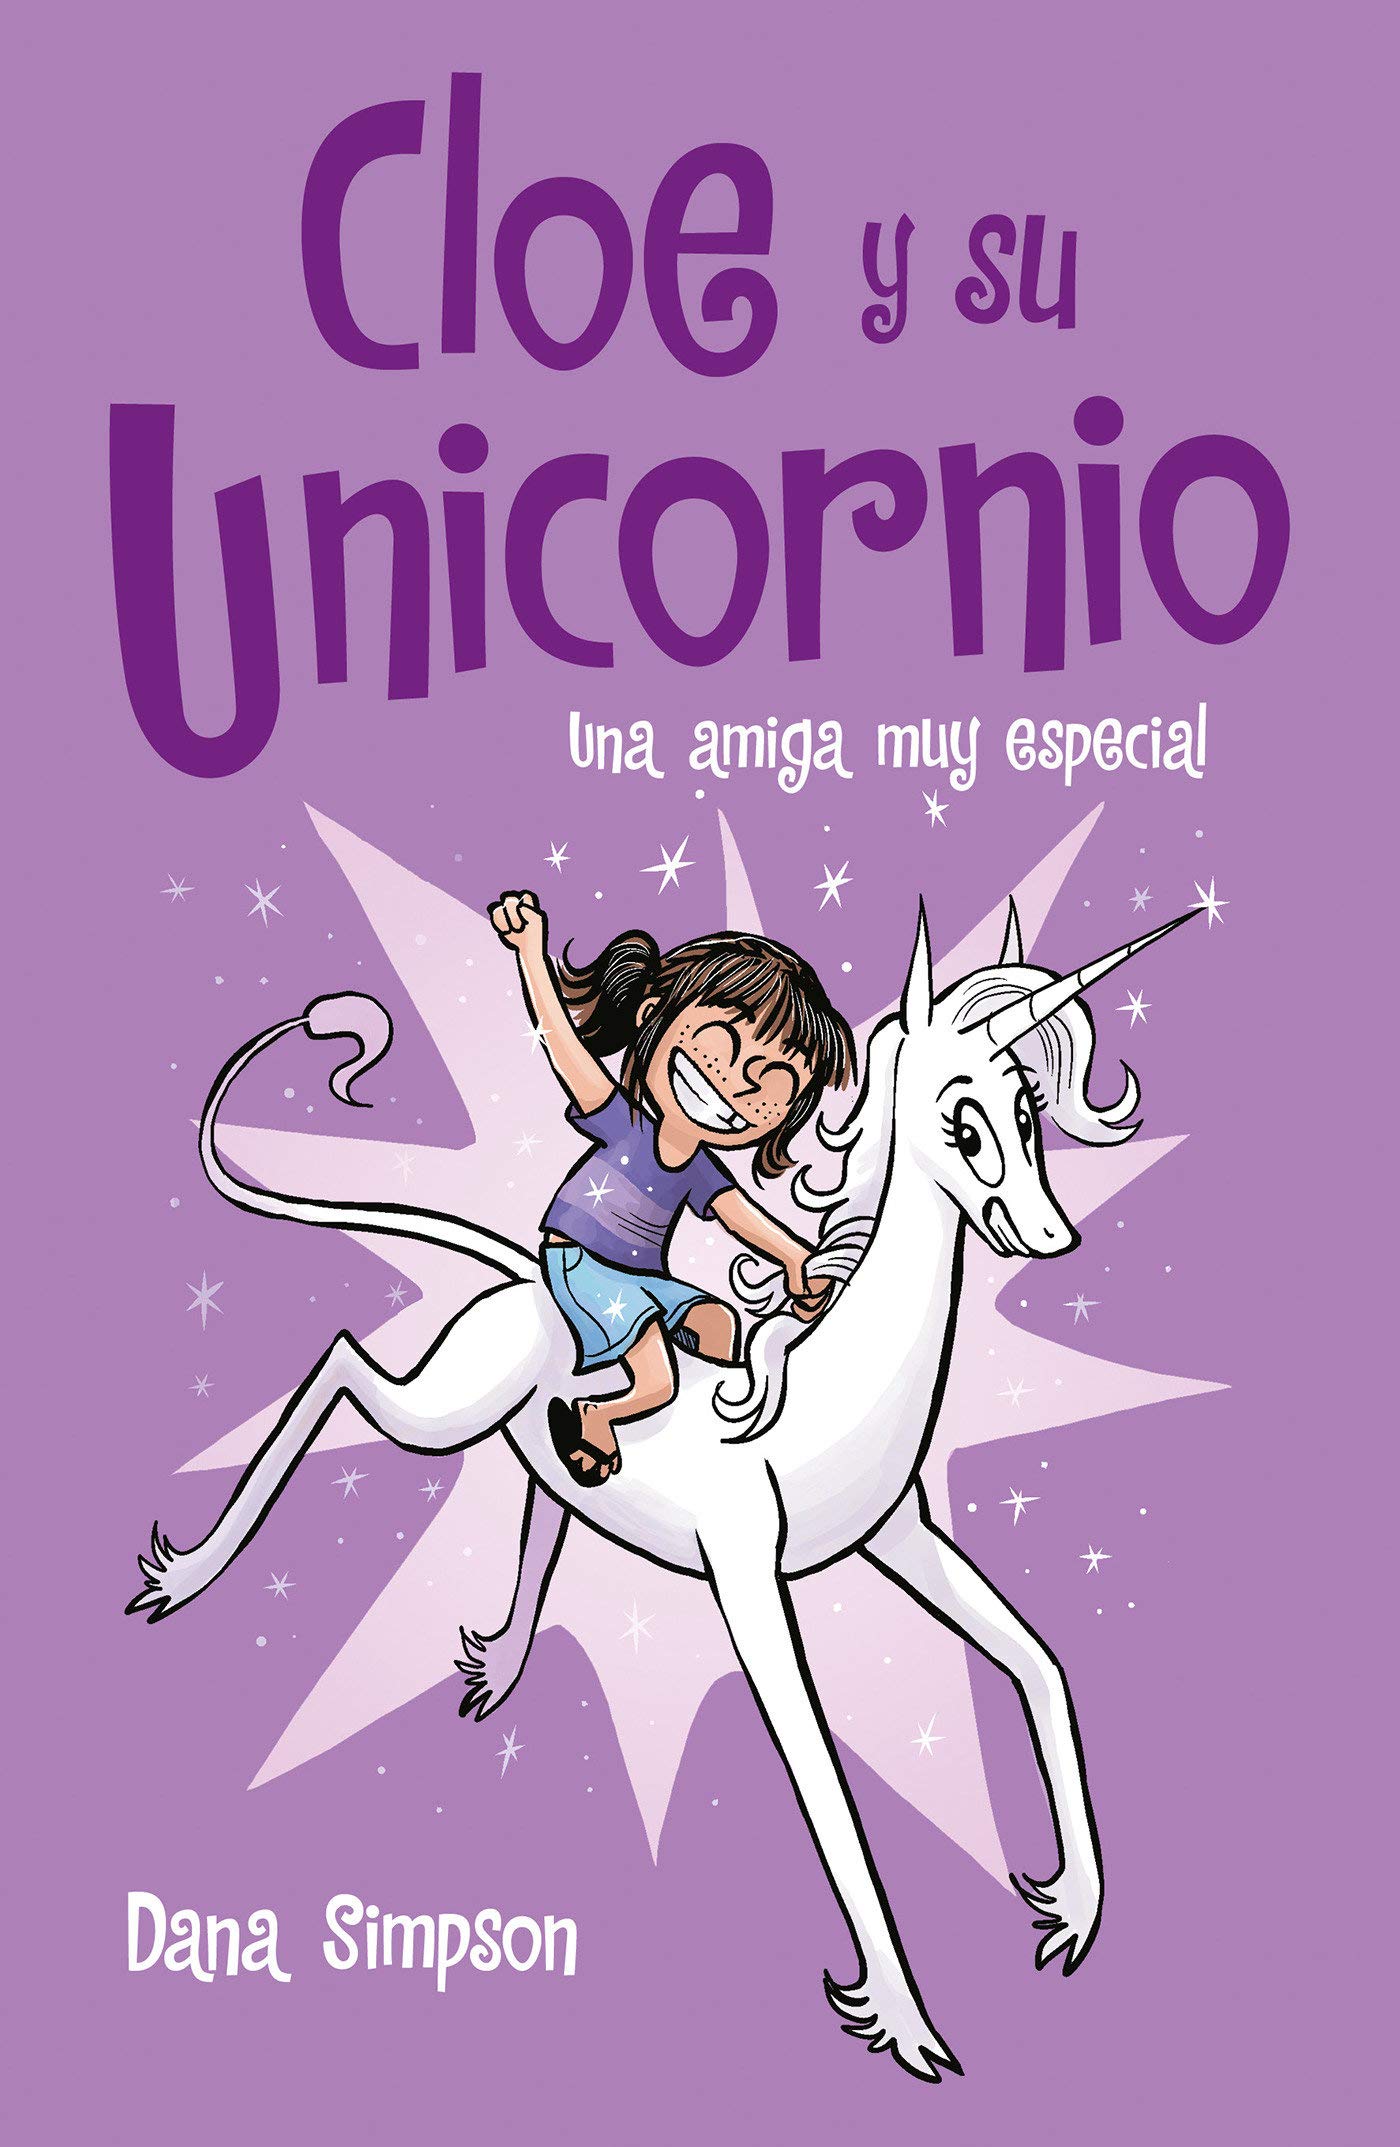 Libro: Una Amiga Muy Especial - Libro 1 de 8: Cloe y su Unicornio por Dana Simpson